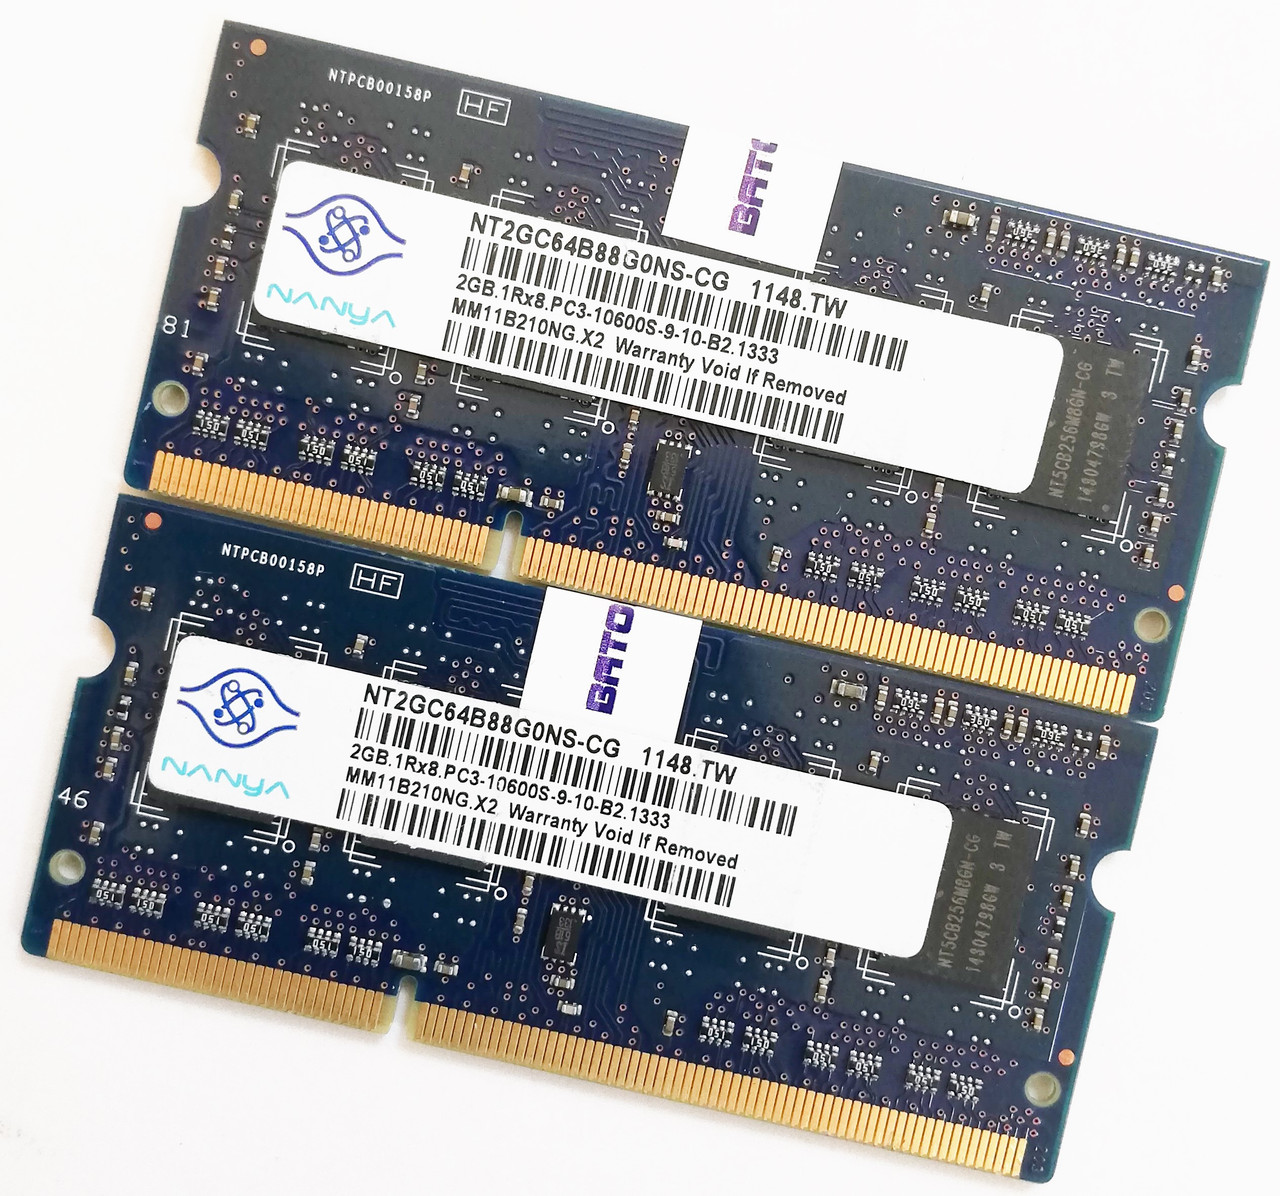 Пара оперативної пам'яті для ноутбука Nanya DDR3 4Gb (2Gb+2Gb) 1333MHz 10600s 1R8 CL9 (NT2GC64B88G0NS-CG) Б/В, фото 1